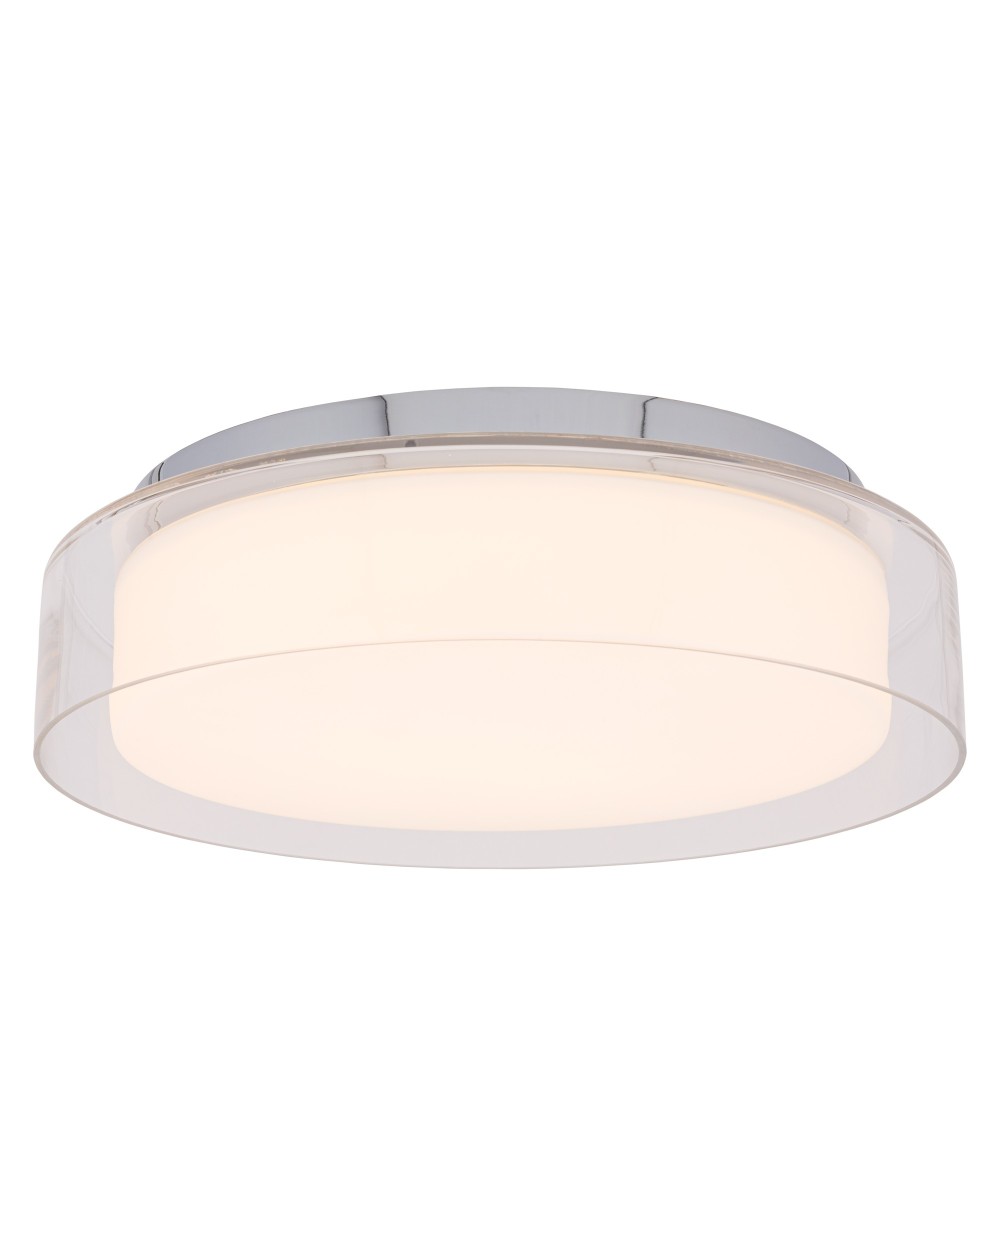 Lampa sufitowa, plafon PAN LED M - Nowodvorski Oświetlenie wewnętrzne